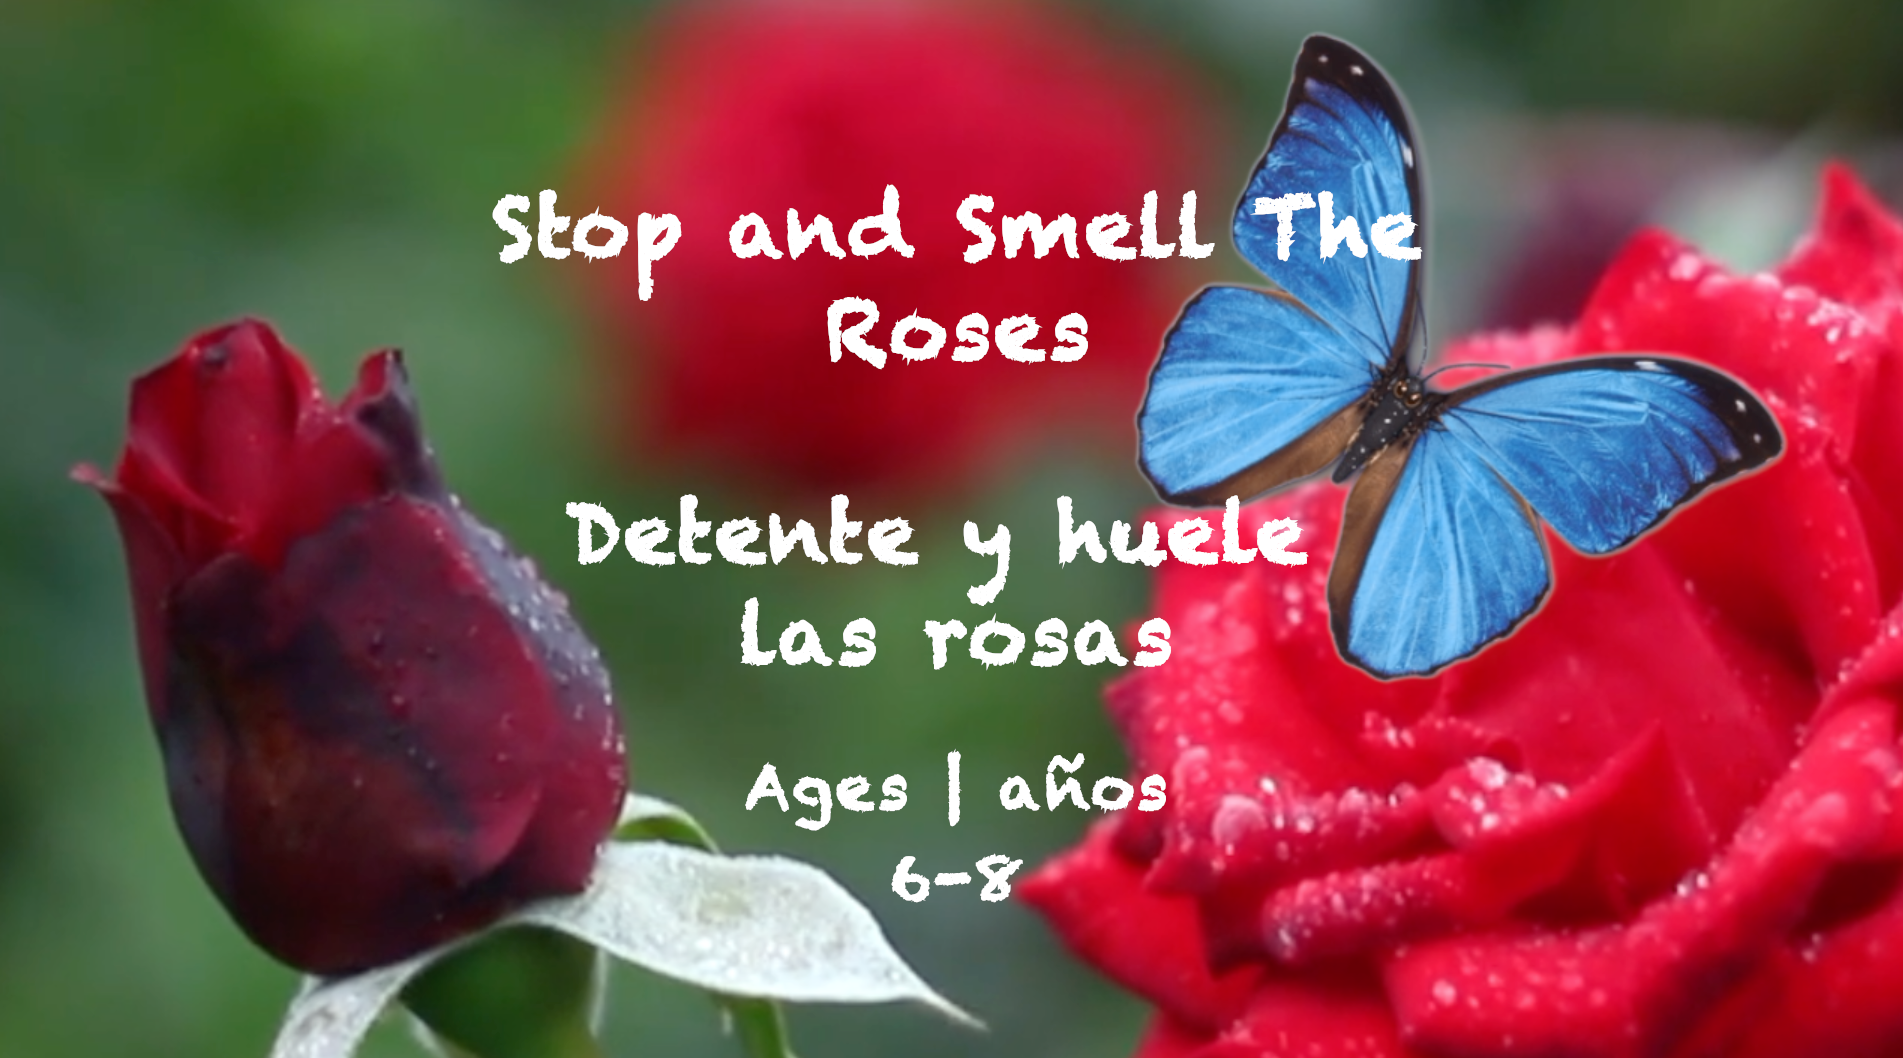 Stop and Smell the Roses para niños de 6 a 8 años